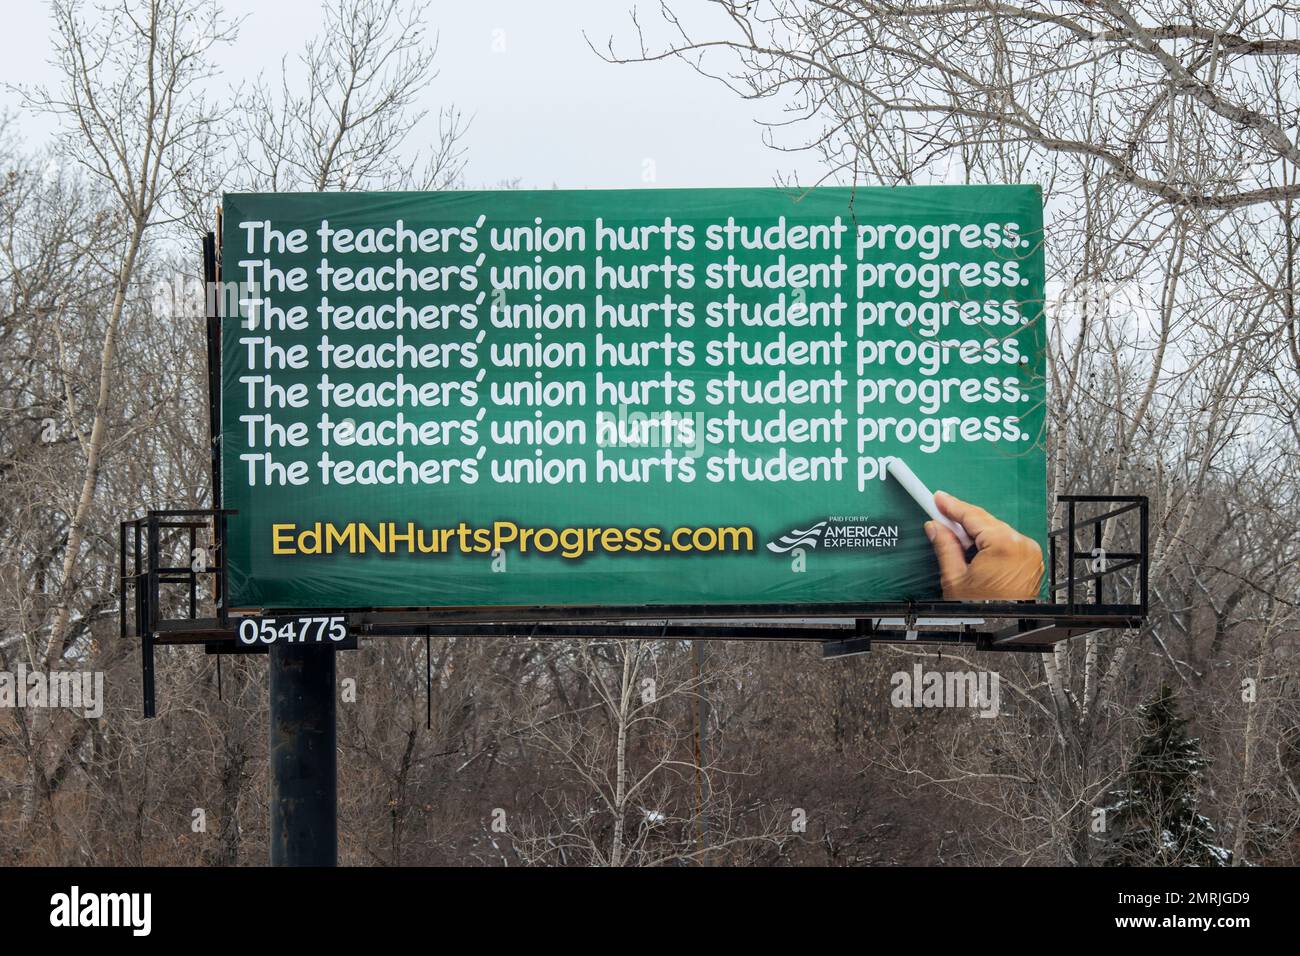 Rapide di Coon, Minnesota. Billboard che dice che il sindacato degli insegnanti danneggia il progresso degli studenti. Foto Stock